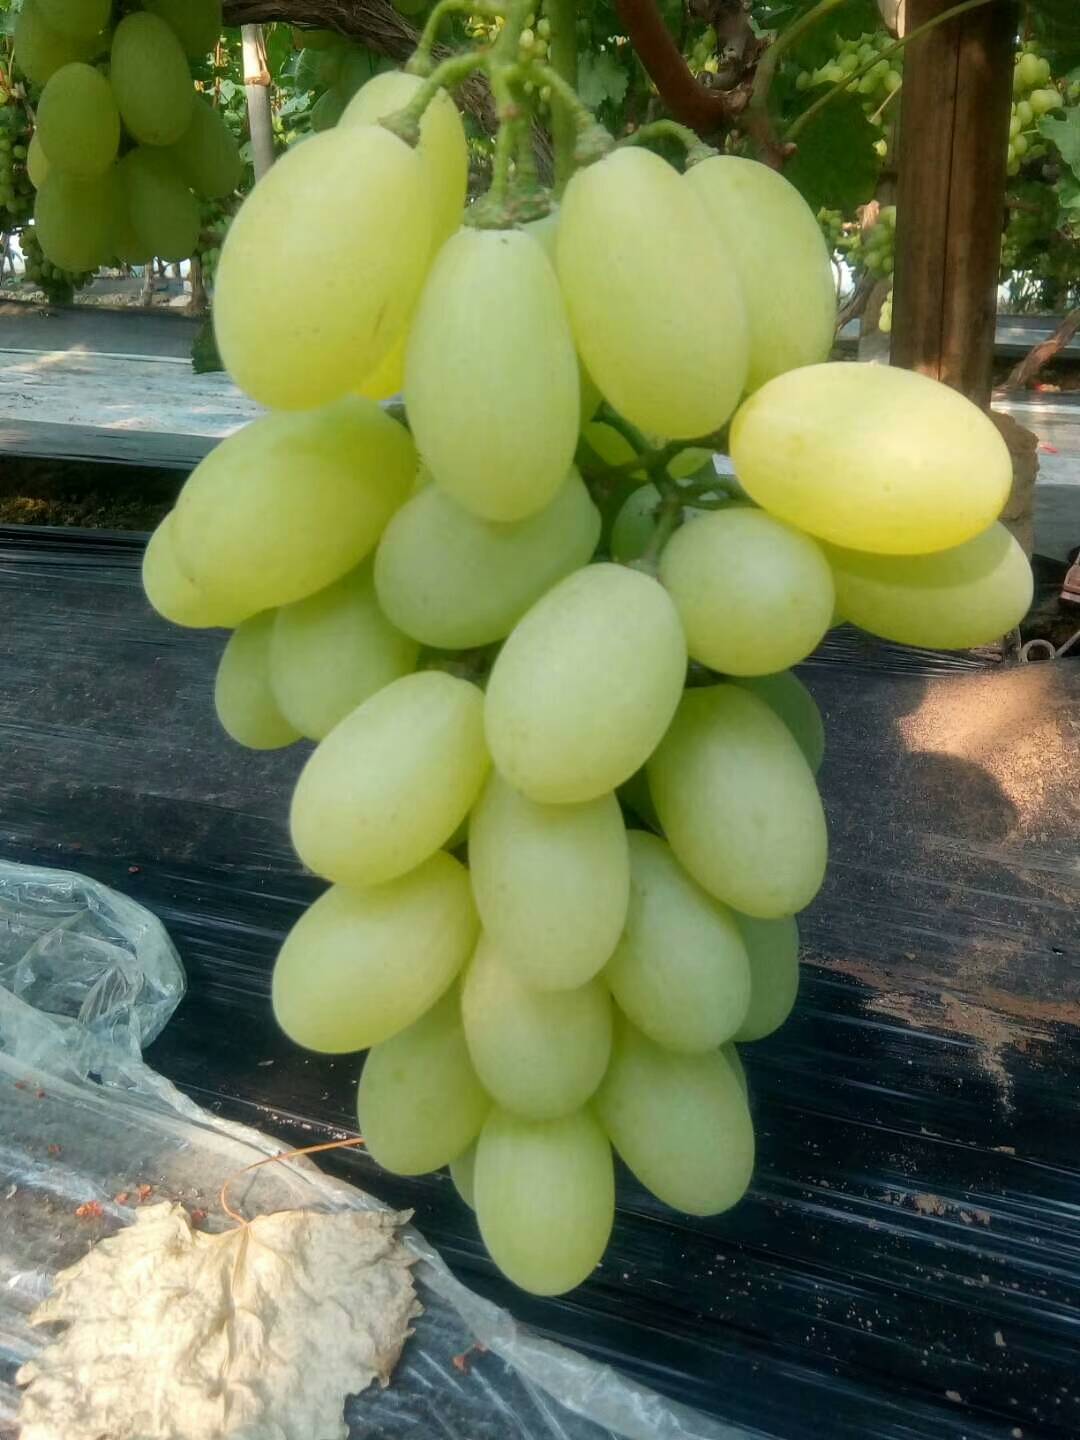 本村种植葡萄2万多亩有京亚葡萄维多利亚有葡萄藤忍葡萄巨峰葡萄7月10号大量上市13833477448